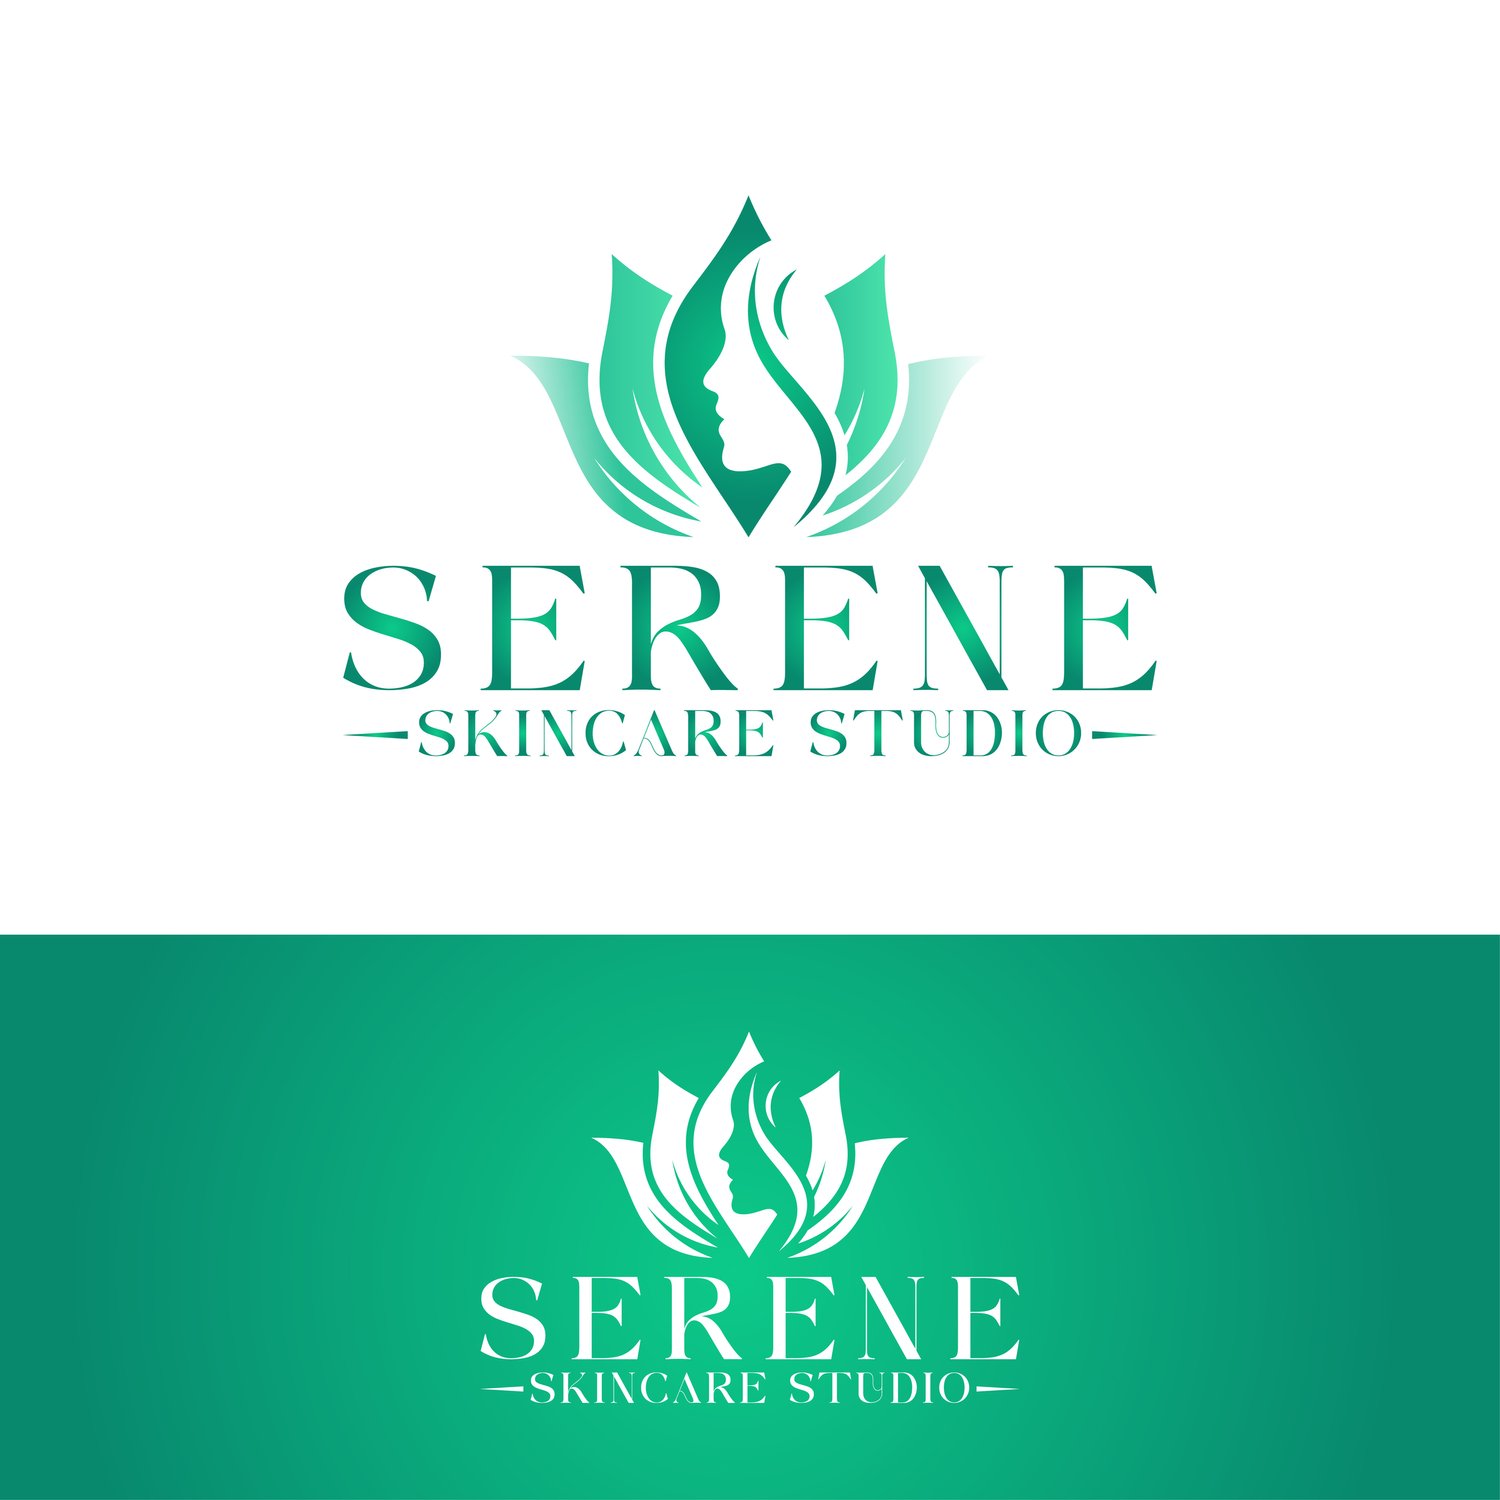 Serene Skincare Studio